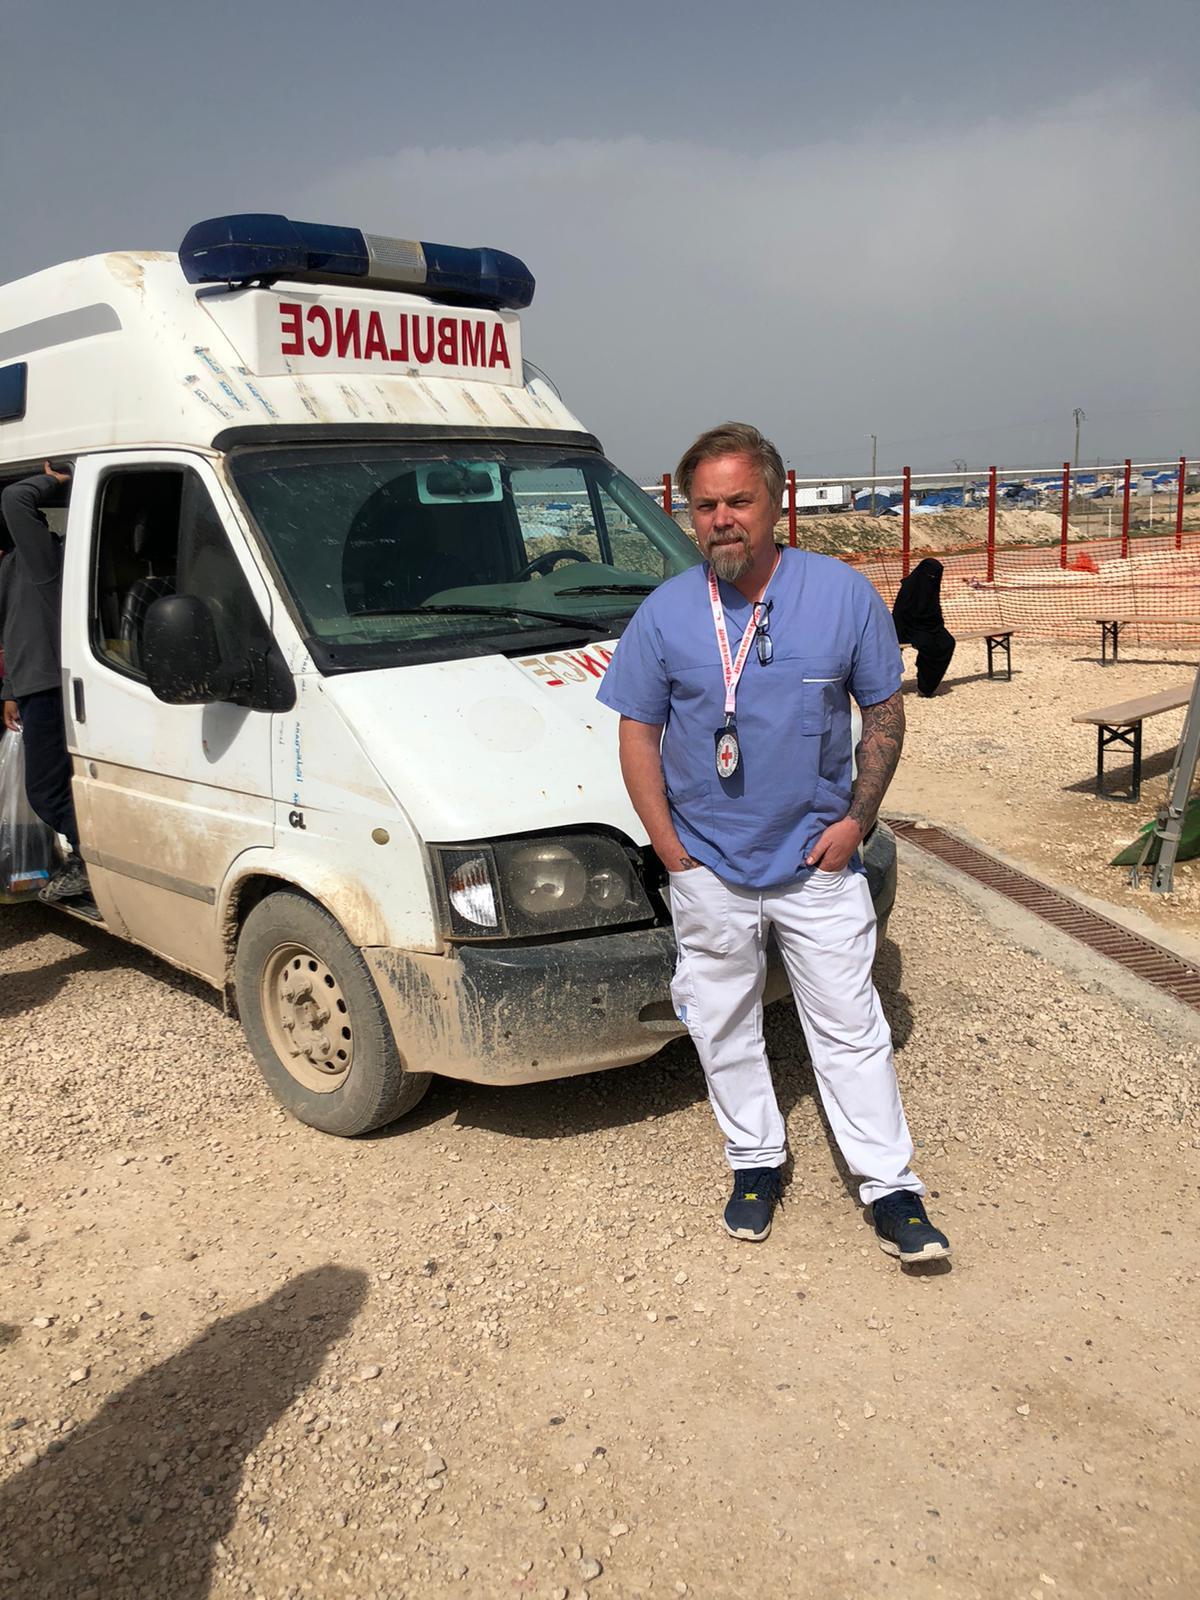 Fredrik Runsköld jobbar som sjuksköterska på ett fältsjukhus precis utanför lägret al-Hol i norra Syrien. "När coronaviruset väl sprids i lägret kommer det att ske okontrollerat och explosionsartat" säger han.